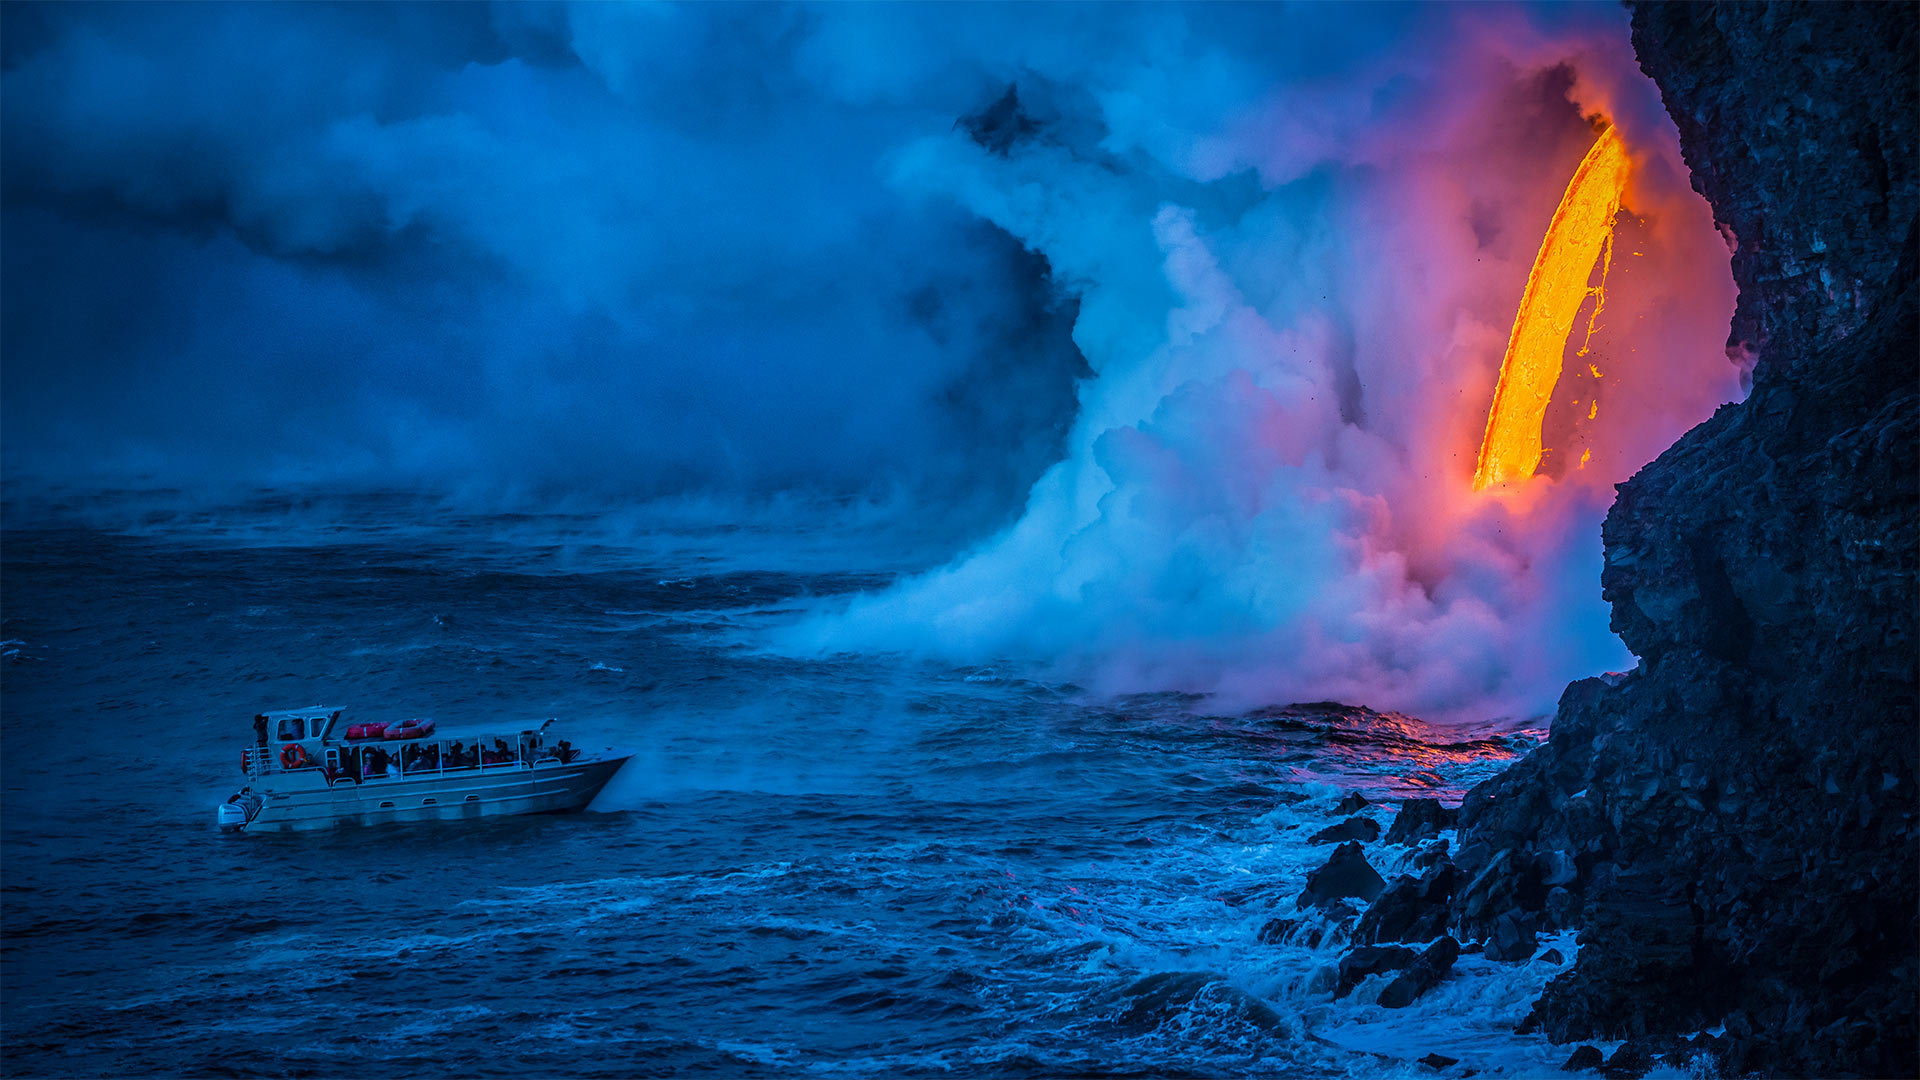 一艘游船经过时熔岩流撞击水面产生爆炸夏威夷火山-www.todaybing.com 必应壁纸 必应美图